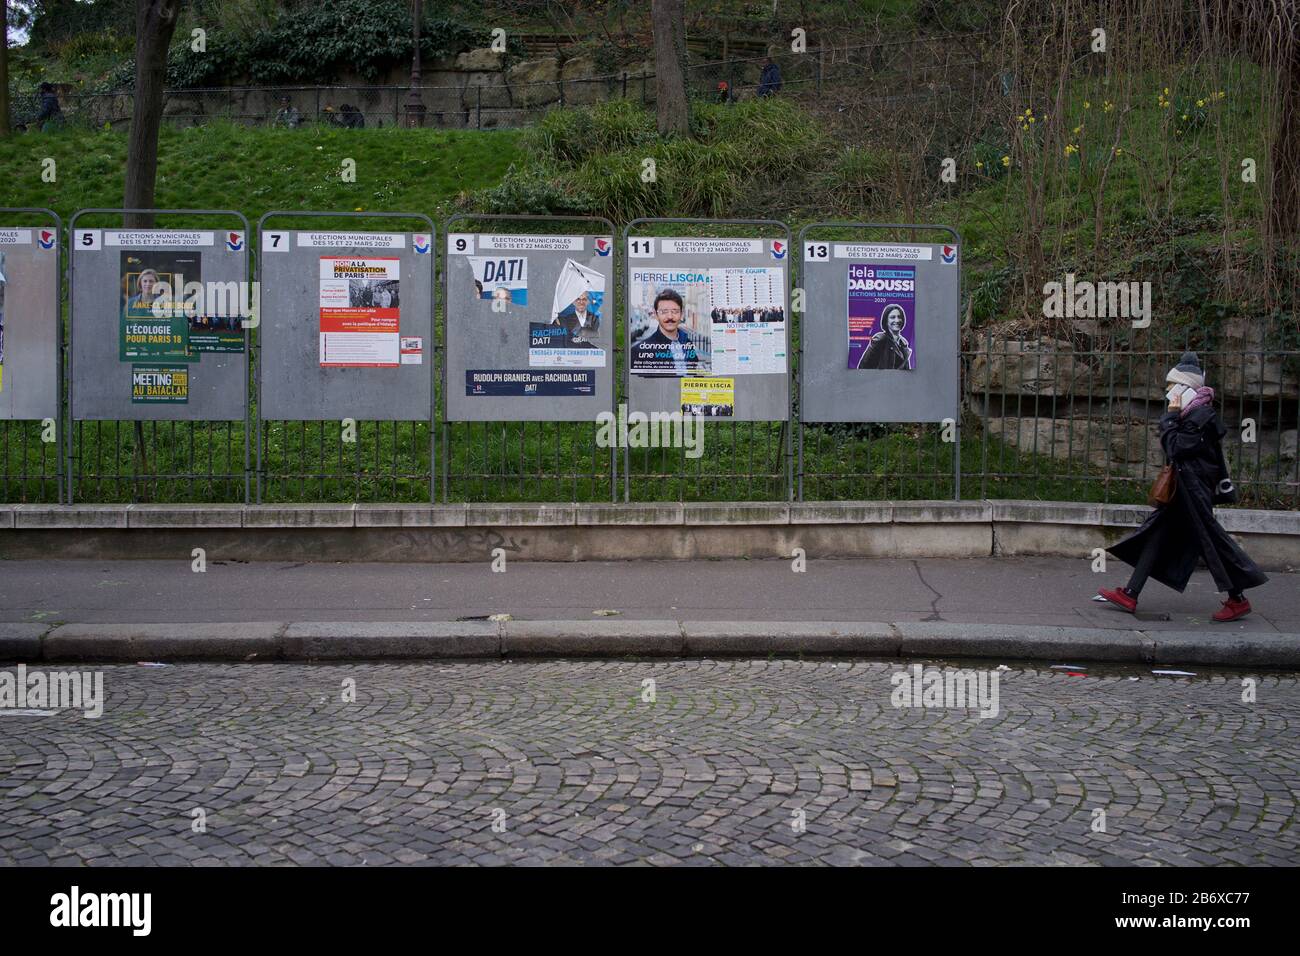 La femme se dirige vers des groupes de candidats aux élections municipales françaises, rue Ronsard, 75018 Paris, France, mars 2020 Banque D'Images